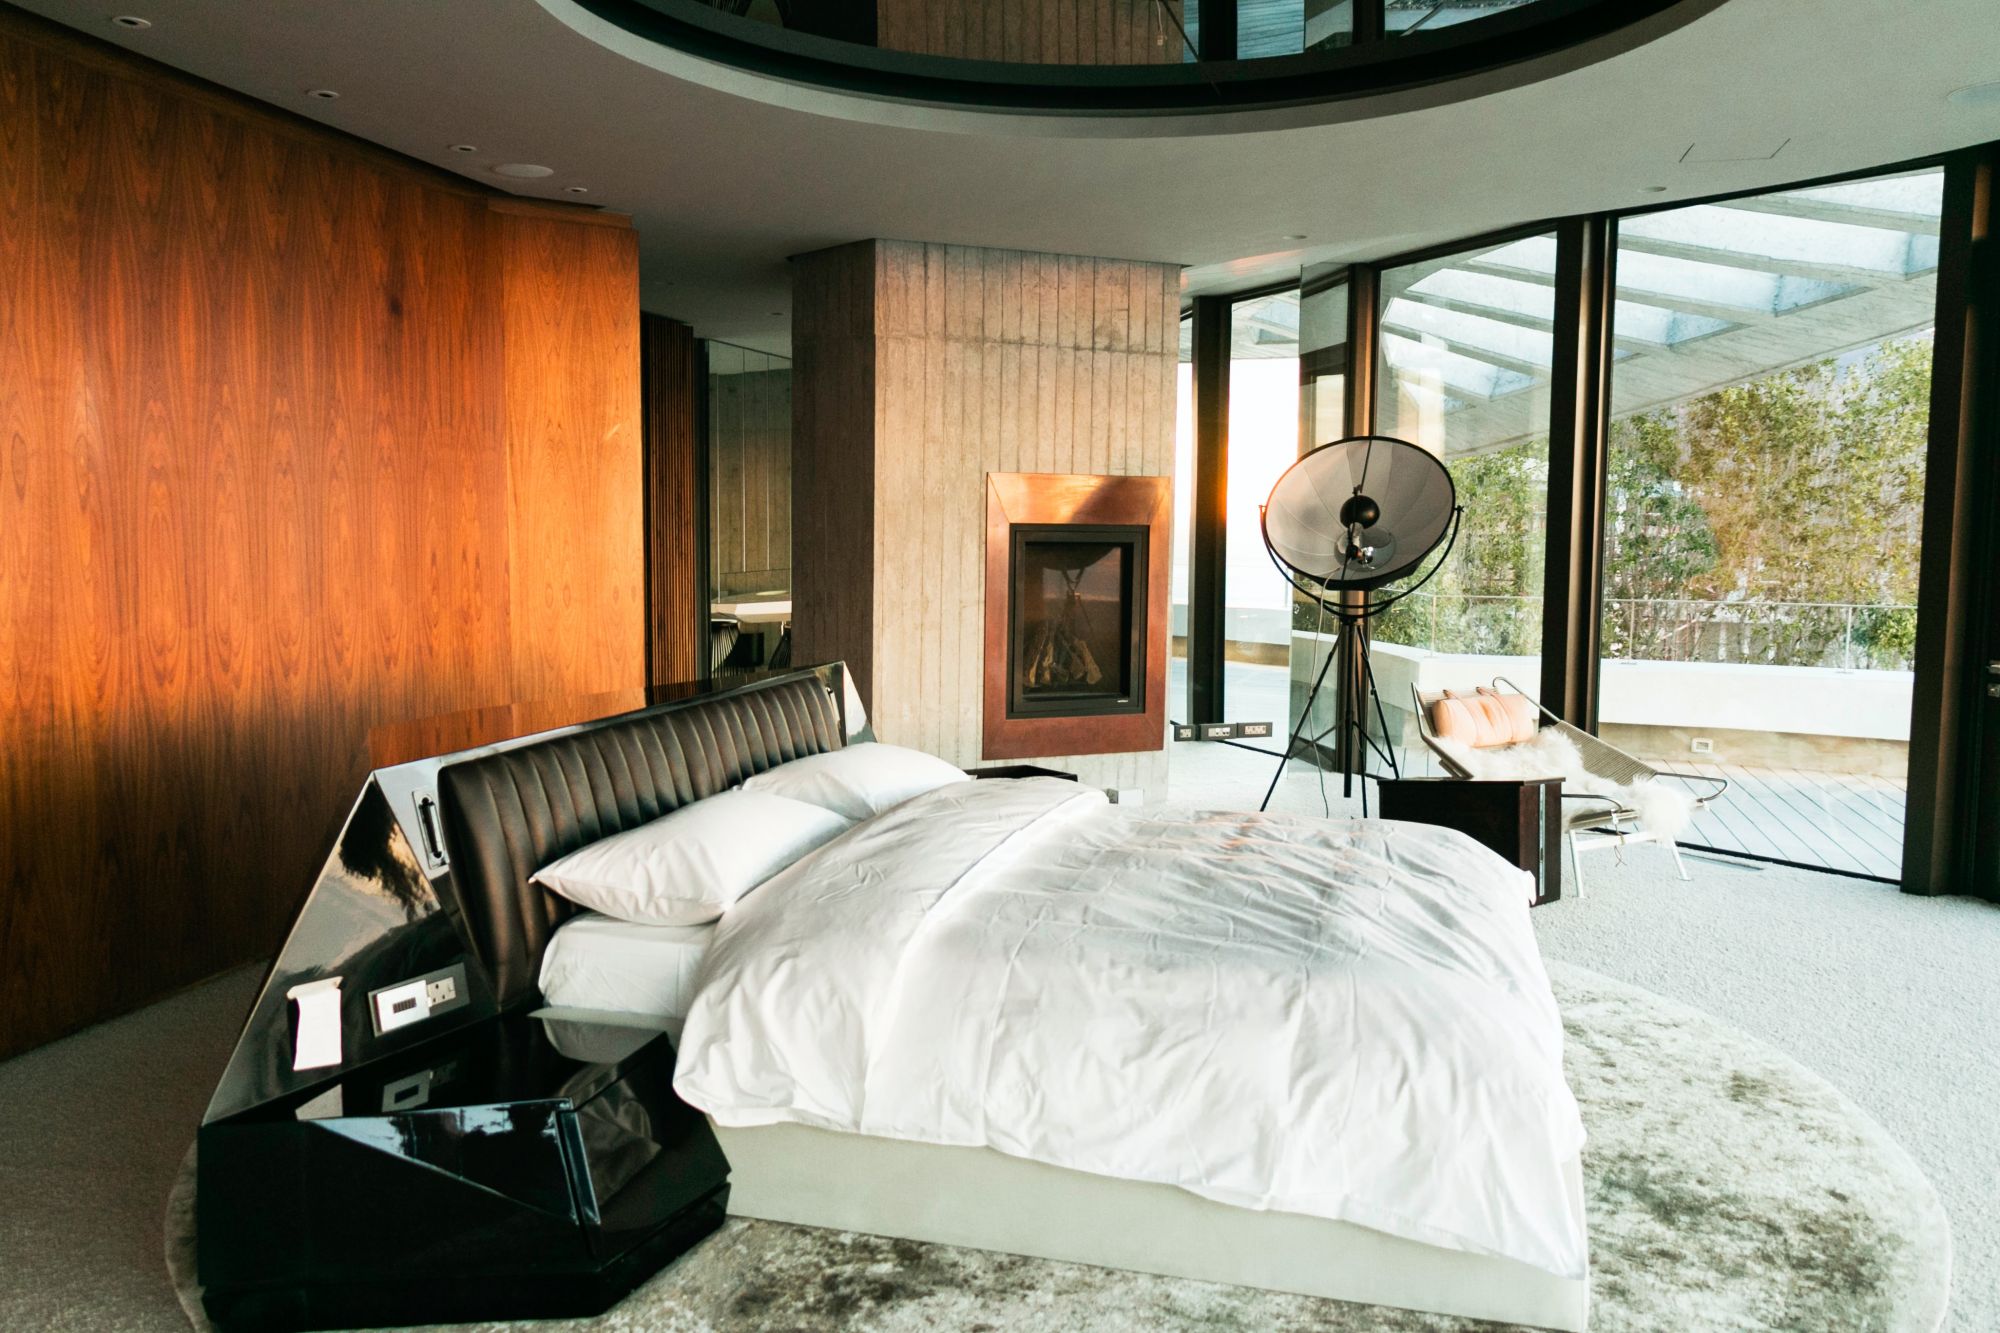 Camera da letto in stile moderno e tessuti